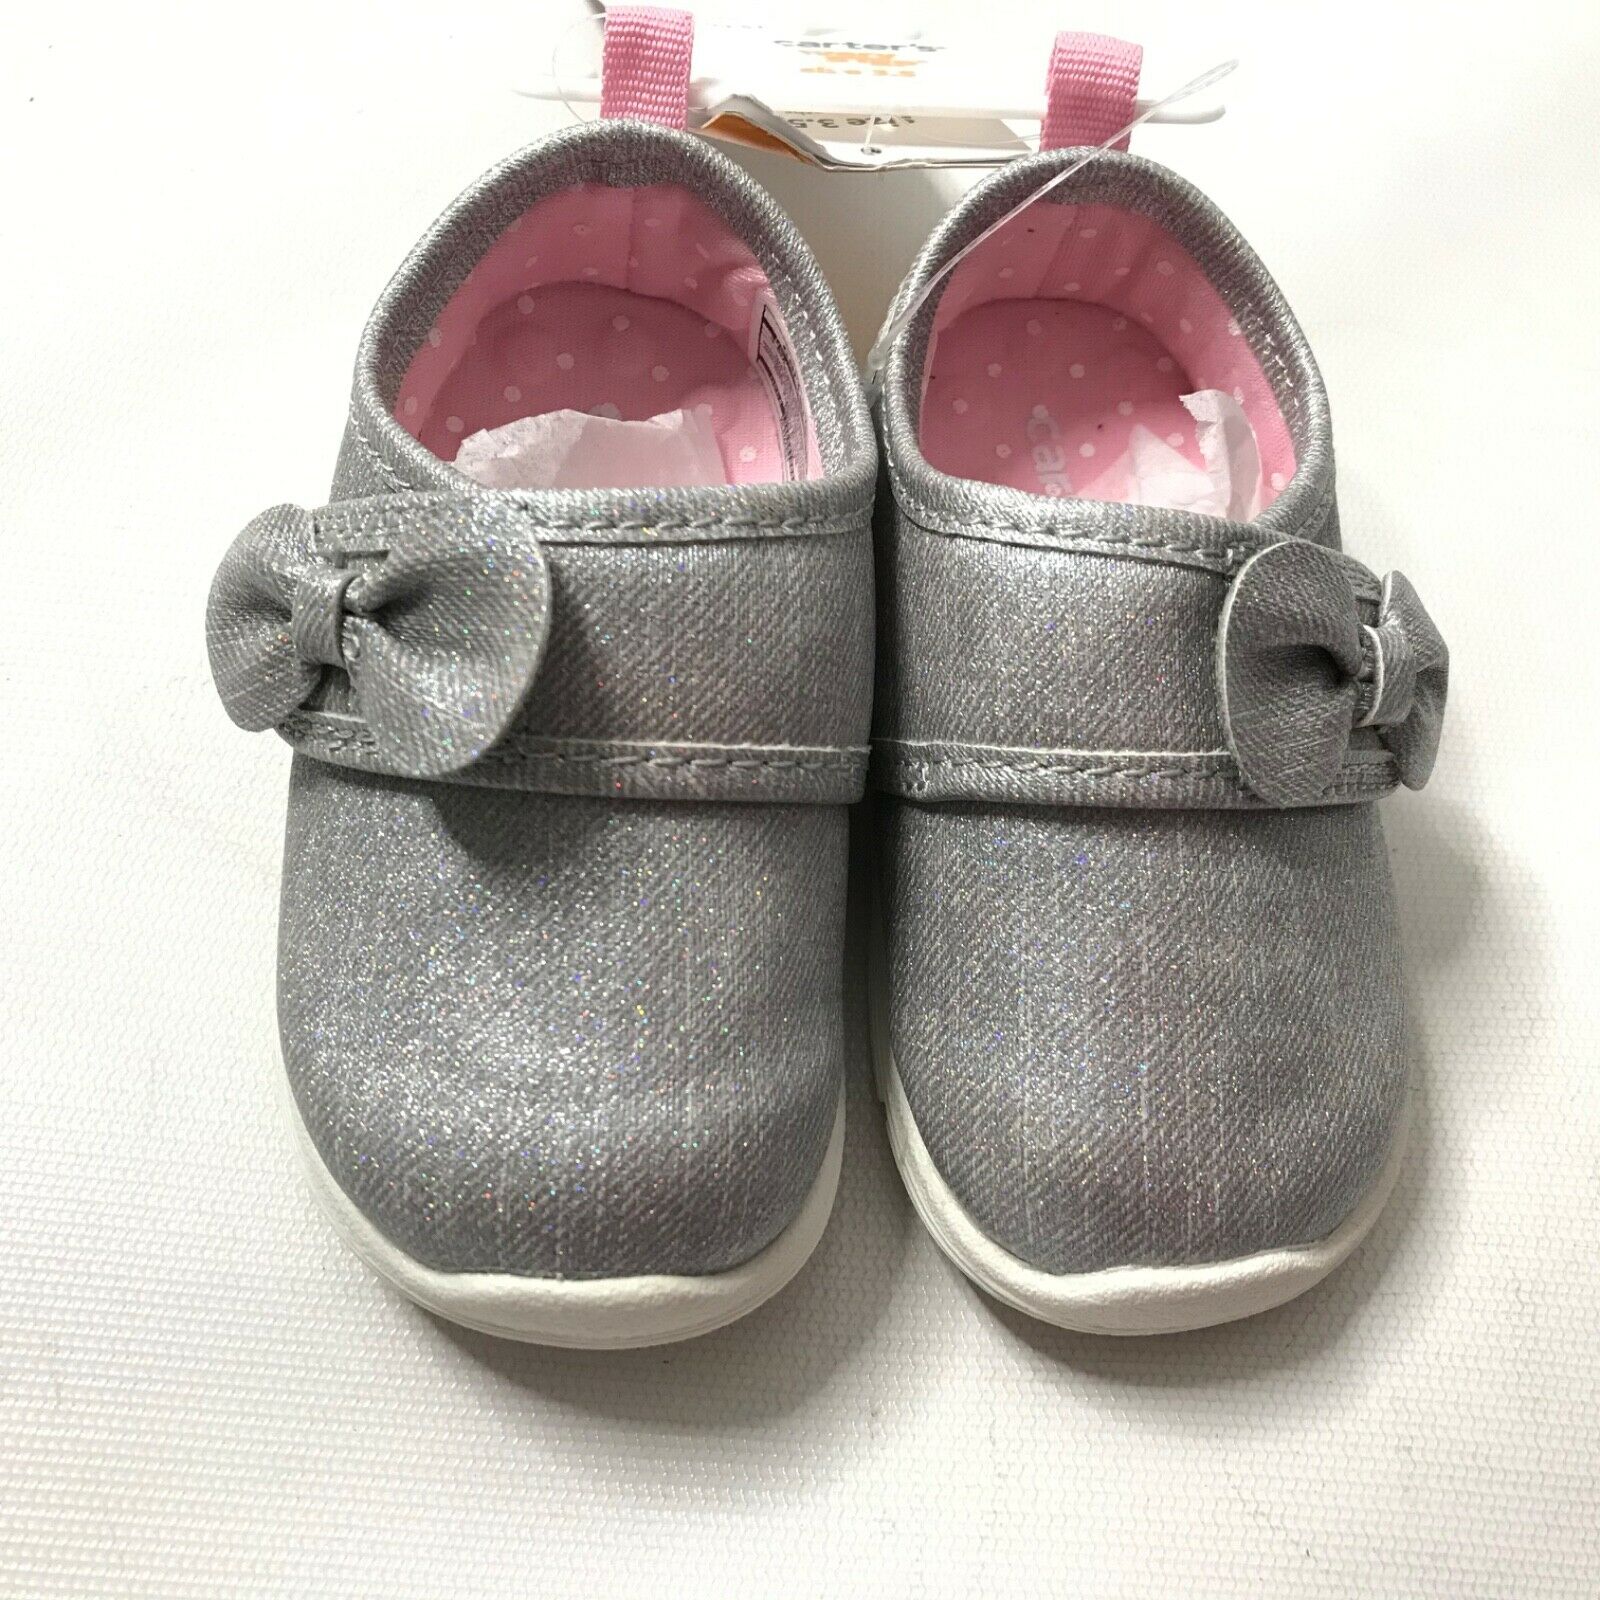 Carter’s Baby Girl 6-9M Gray Glitter Dress Shoes Size 3.5 Infant Toddler Slip On